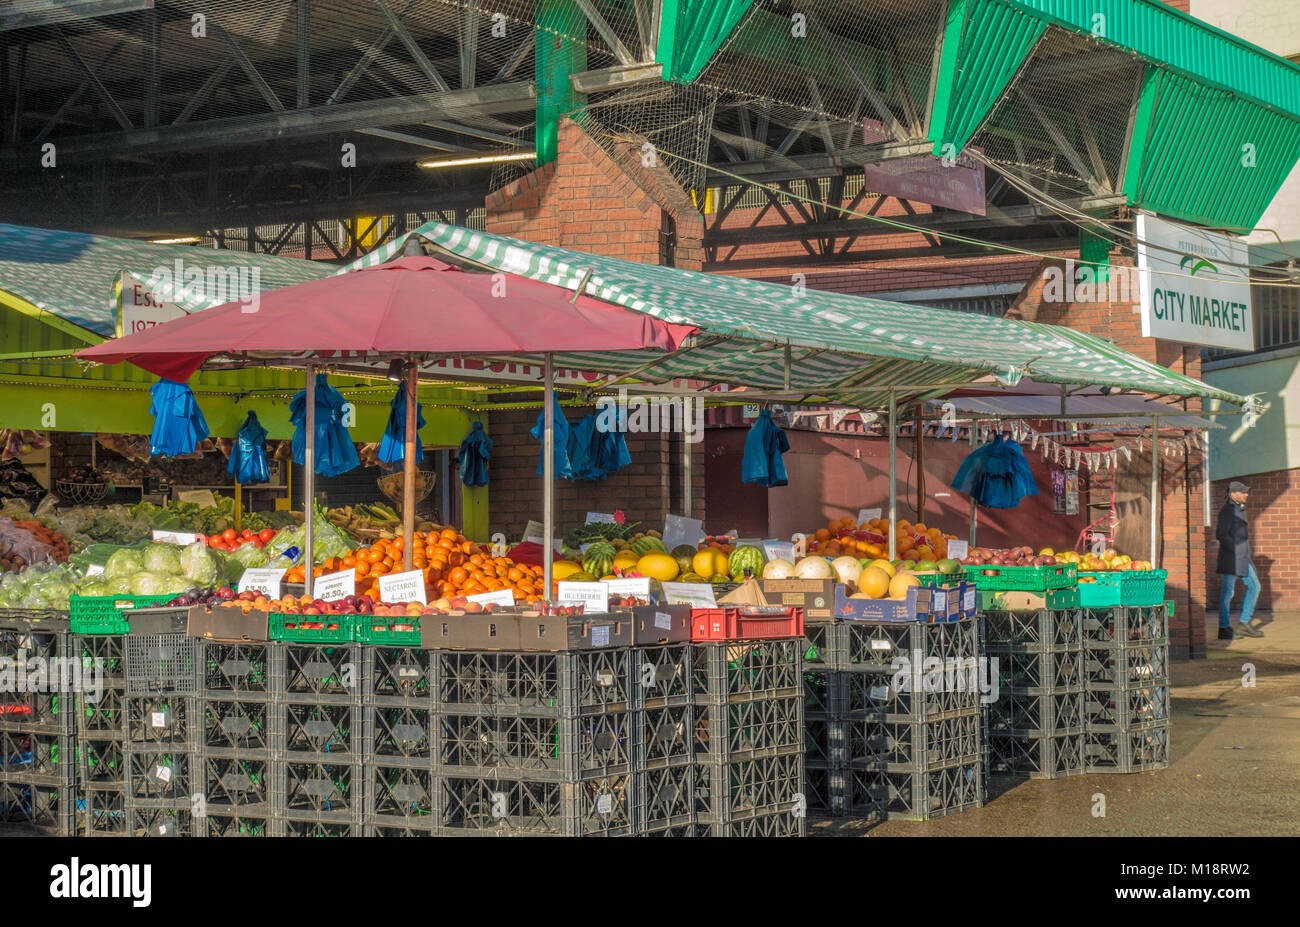 Frutta fresca e verdura stallo, con appeso sacchi da asporto, nel mercato di Peterborough city centre, Cambridgeshire, Inghilterra, Regno Unito. Foto Stock